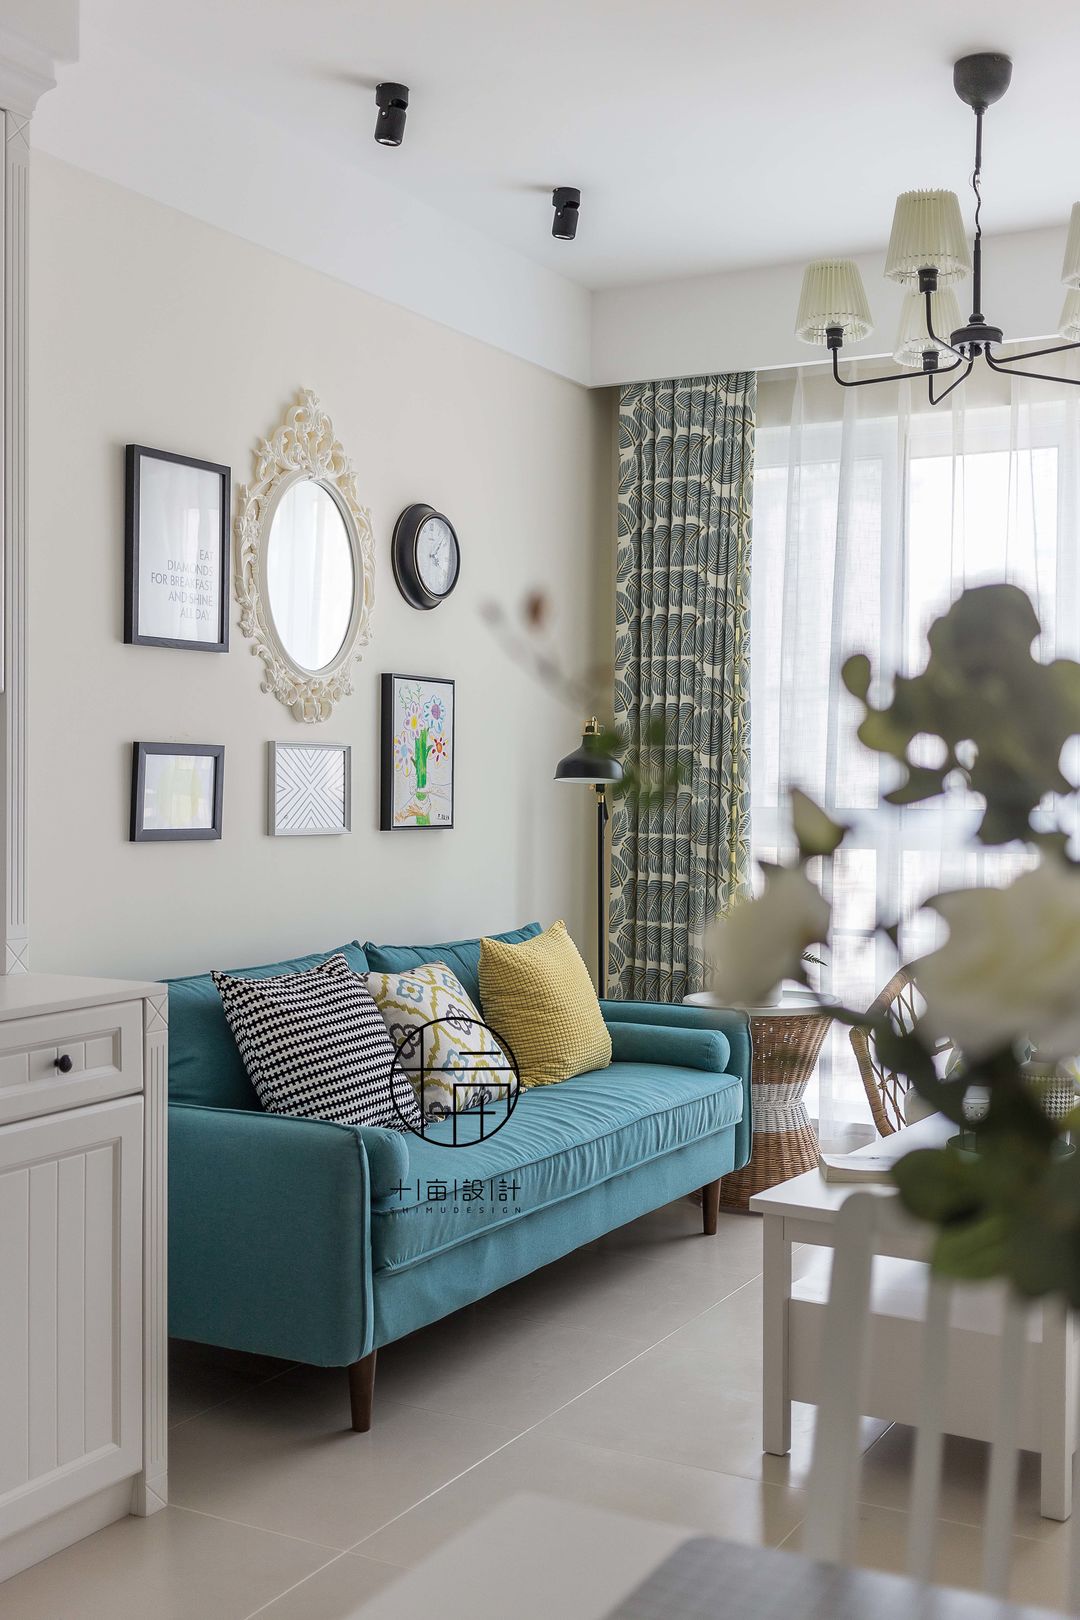 蓝色主沙发点缀跳色靠枕,背景采用不同的墙饰与简框画